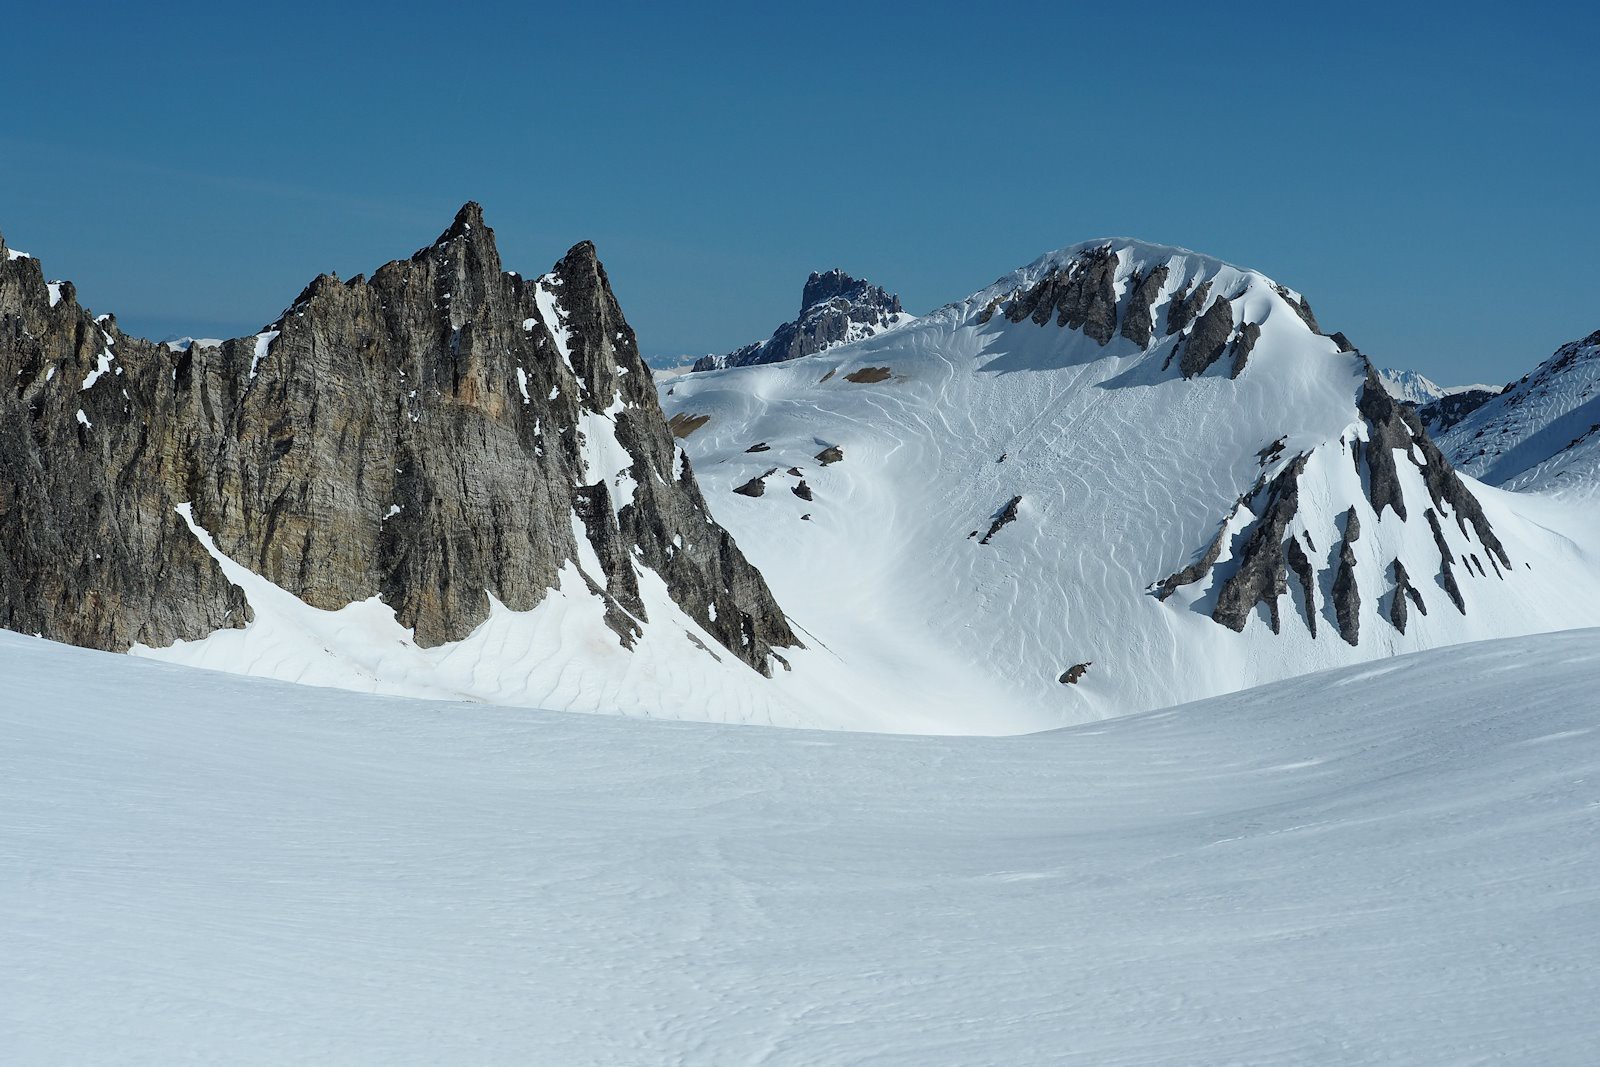 Sortie vers 2900 m sur le glacier de Gébroulaz.